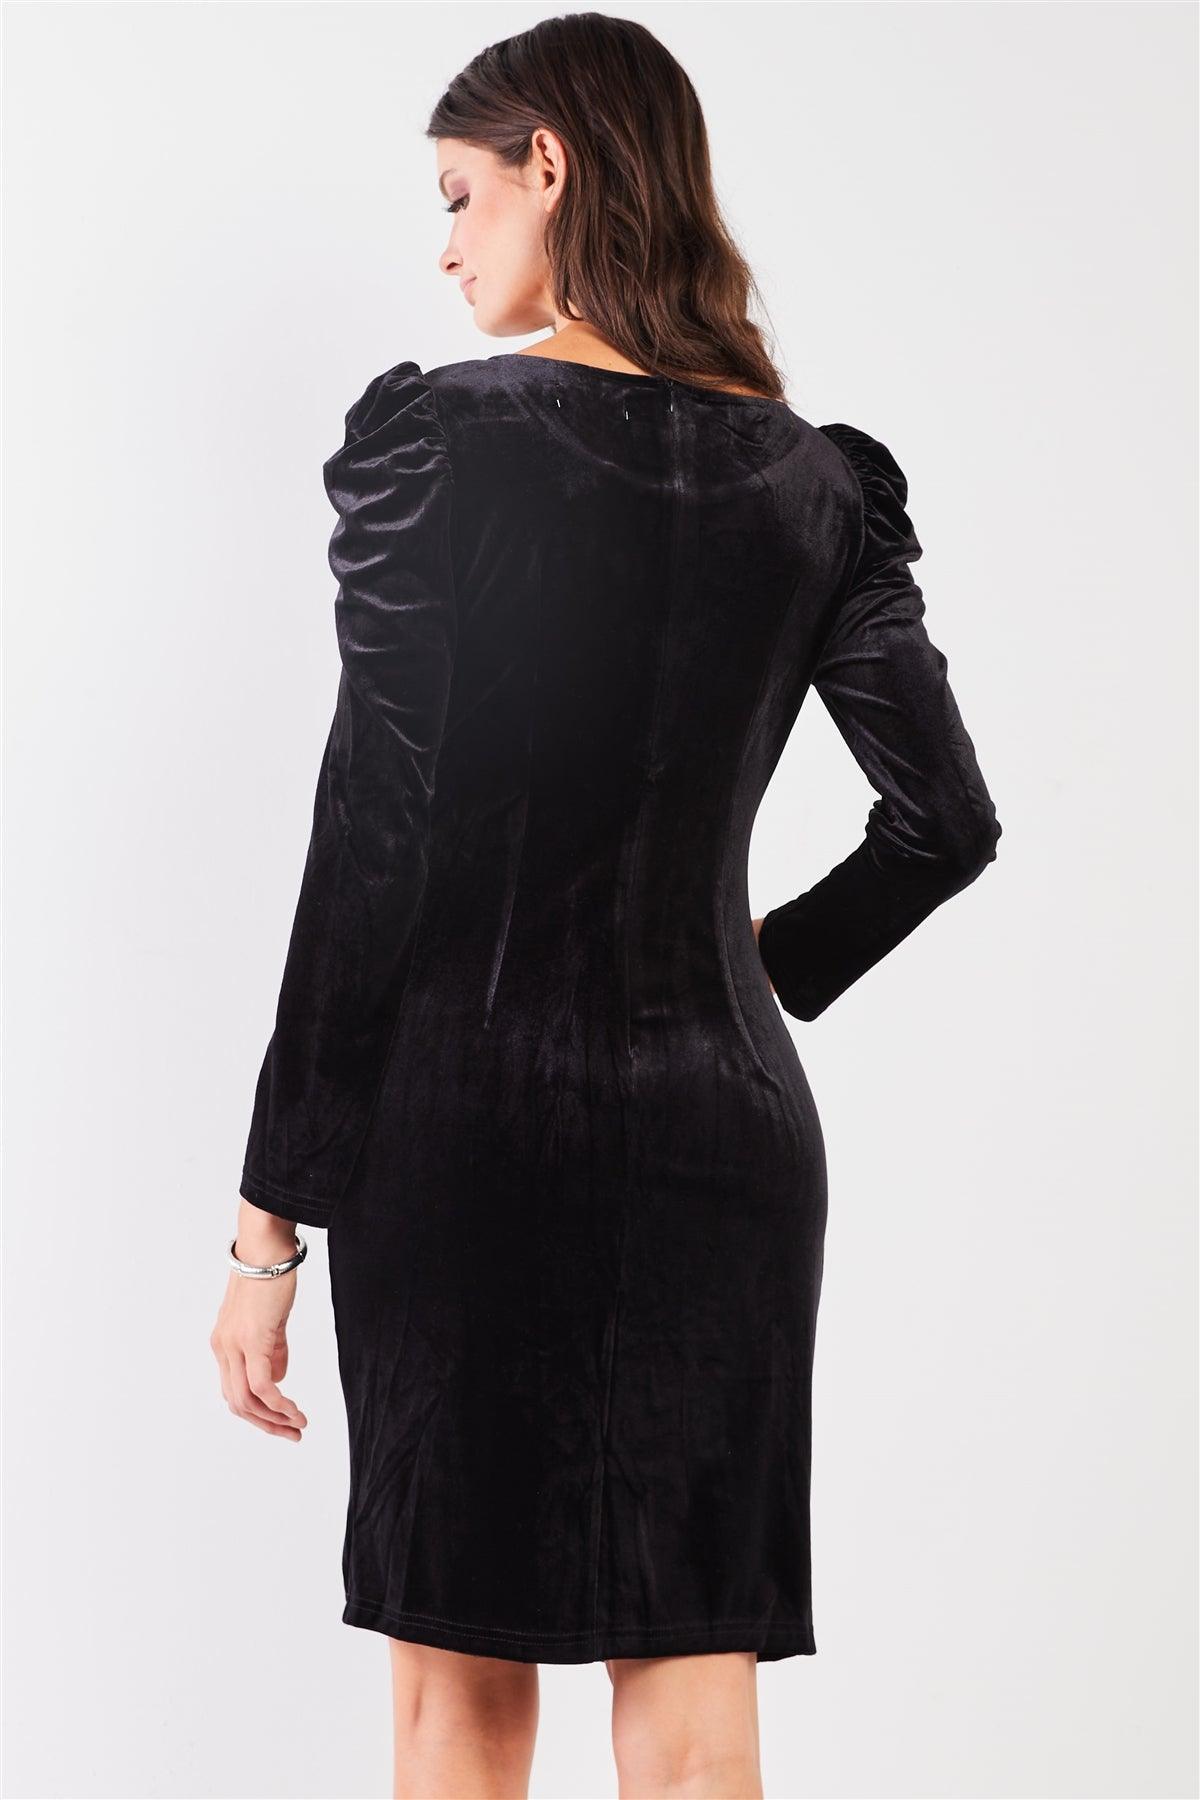 Black Velvet Rhinestone Neckline Trim Juliet Long Sleeve Knee Length Slit Dress /1-1-1